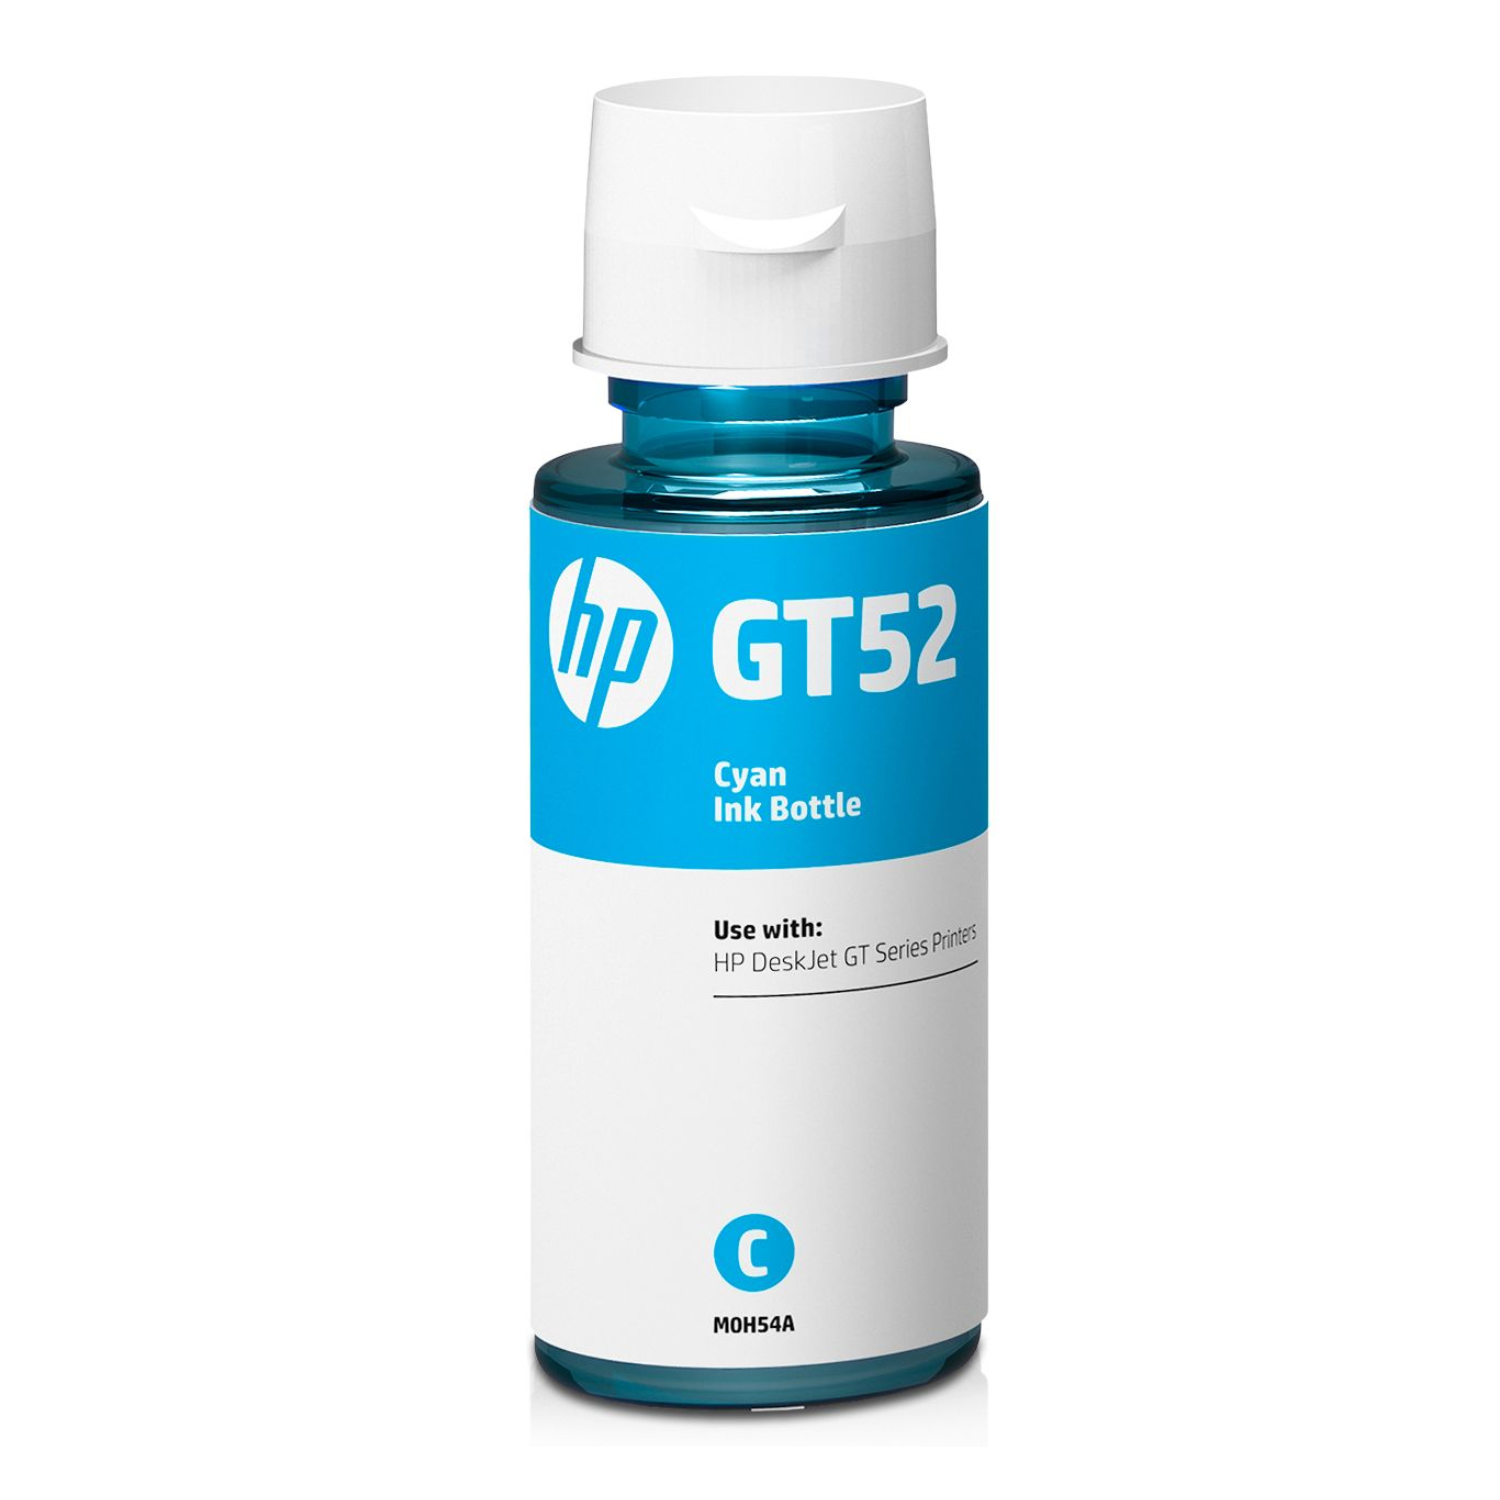 Botella de Tinta HP GT52 Cian Original (M0H54AL) 70ml